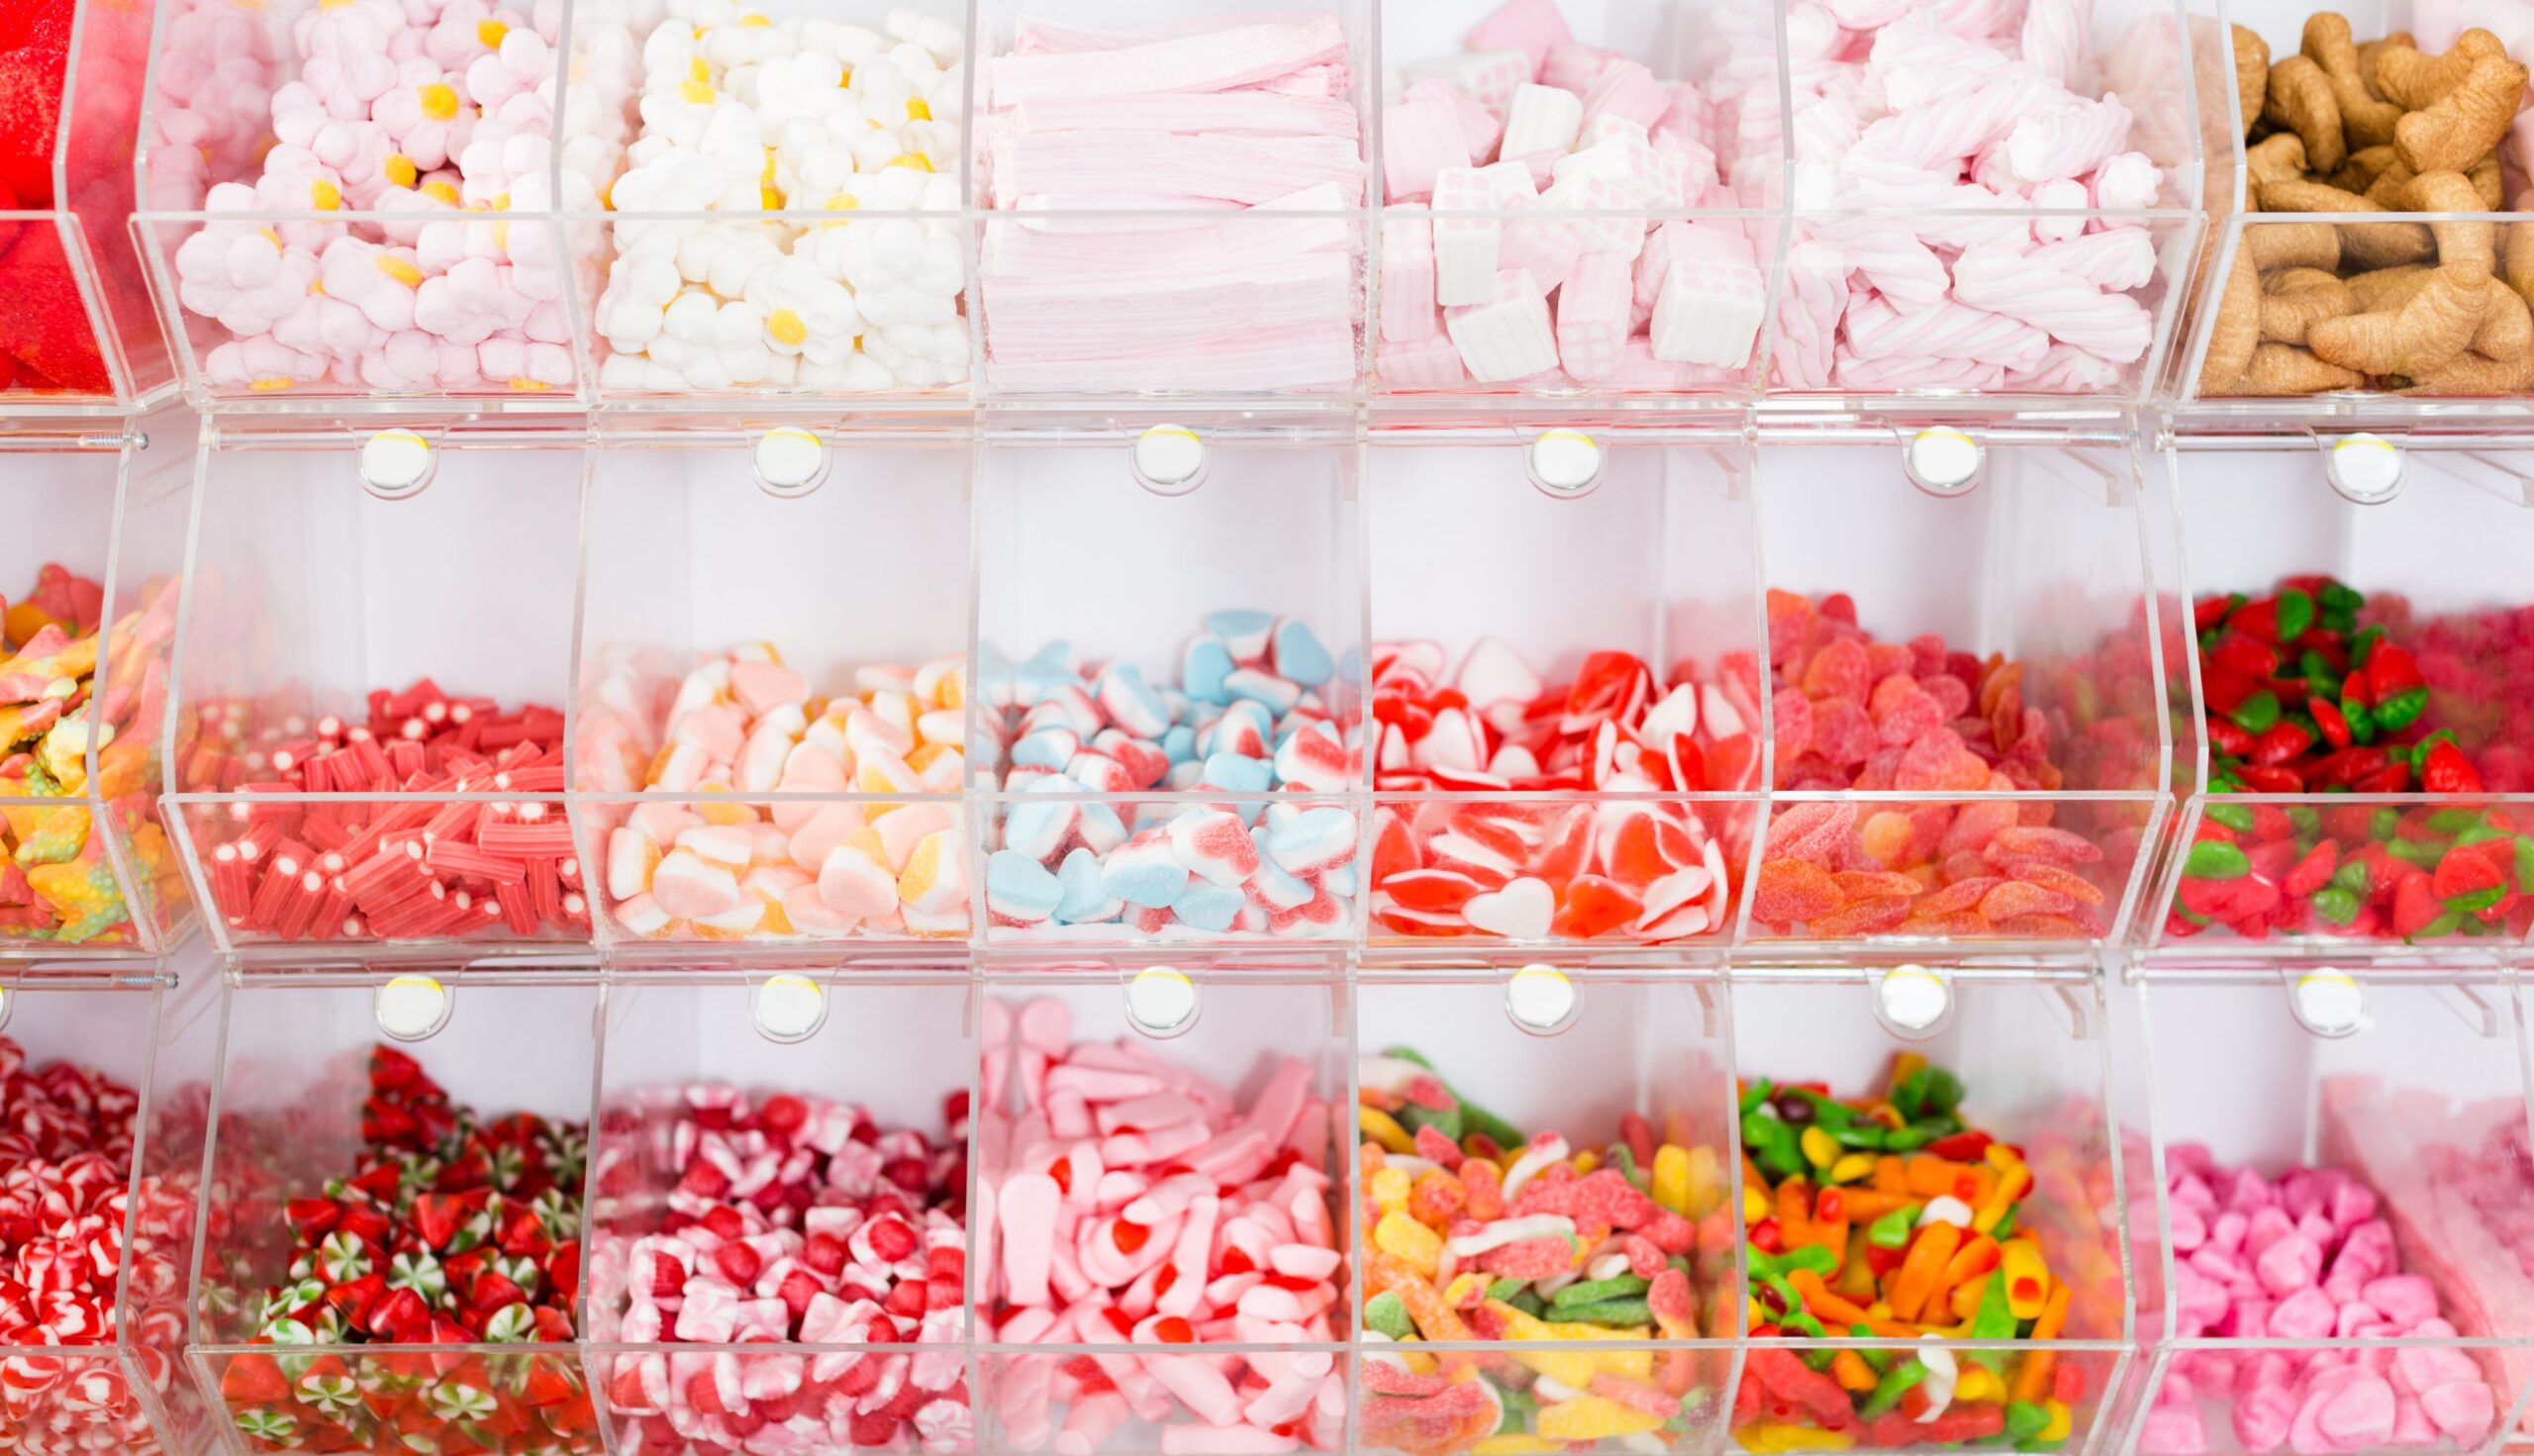 Spreco alimentare come conservare cioccolato - dolciumi - caramelle - marshmallow - confetti nel tuo negozio